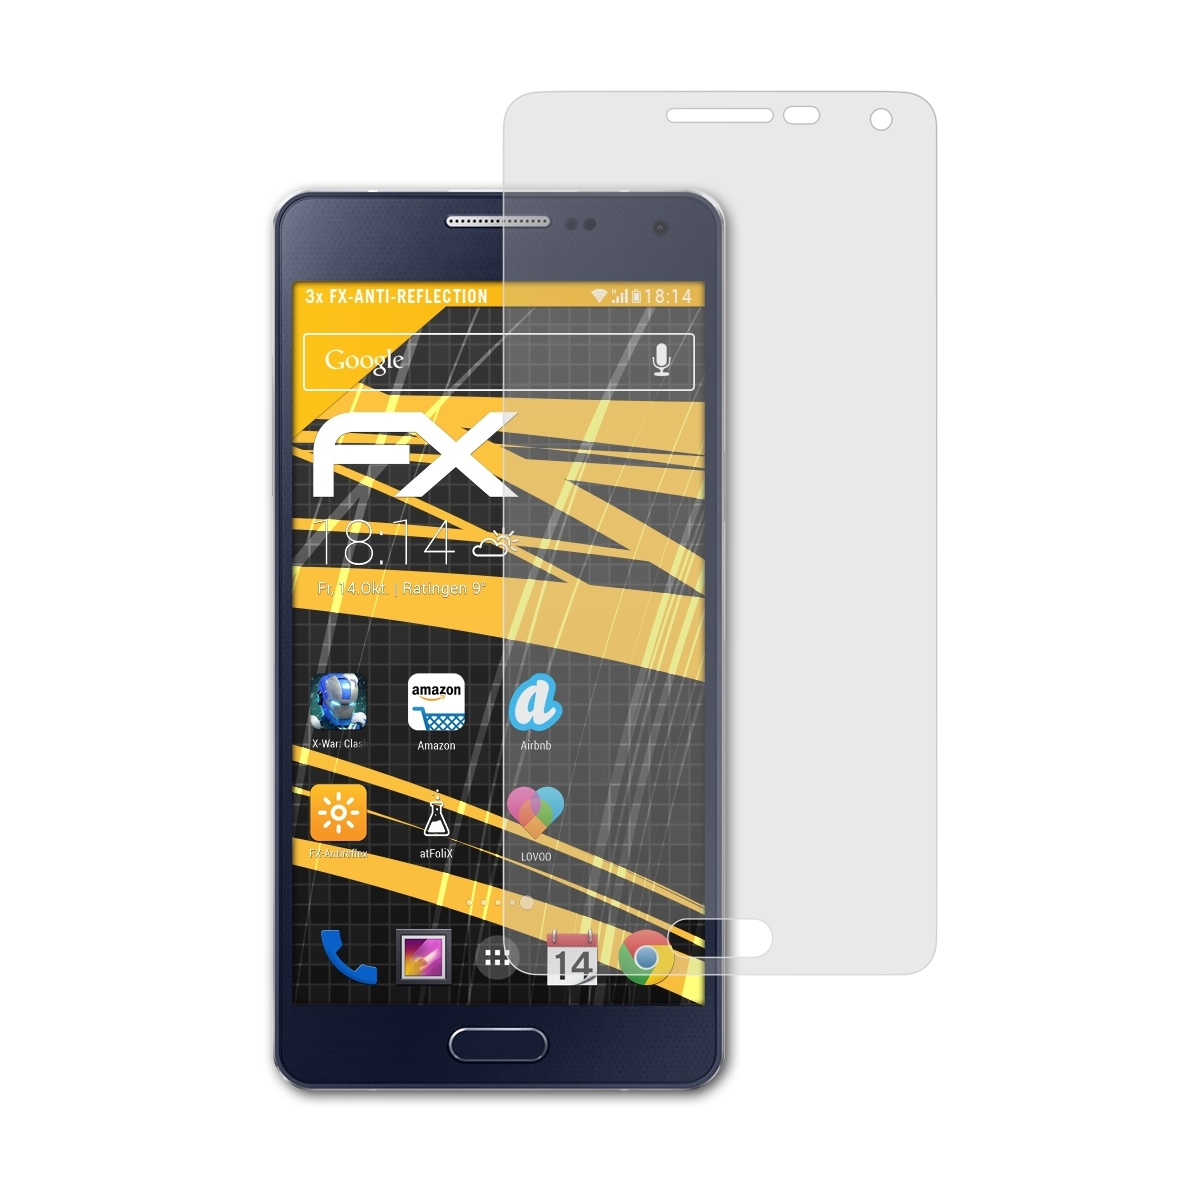 Galaxy ATFOLIX (2015)) A5 Samsung Displayschutz(für 3x FX-Antireflex